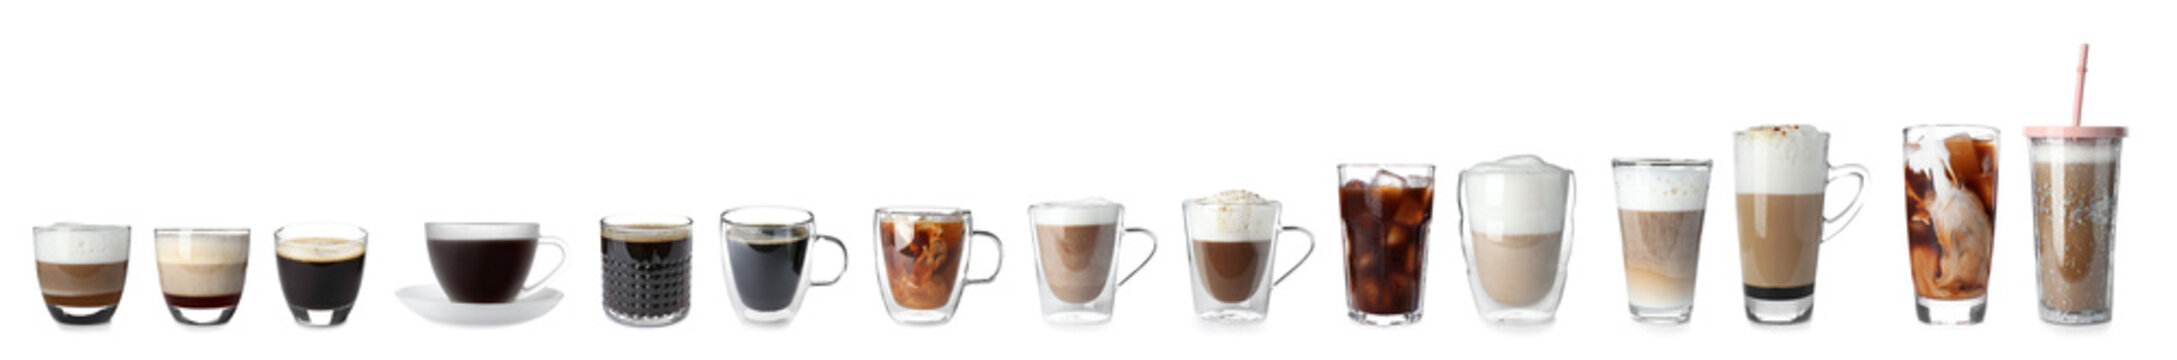 Fototapeta Zestaw z różnymi rodzajami napojów kawowych na białym tle szeroka